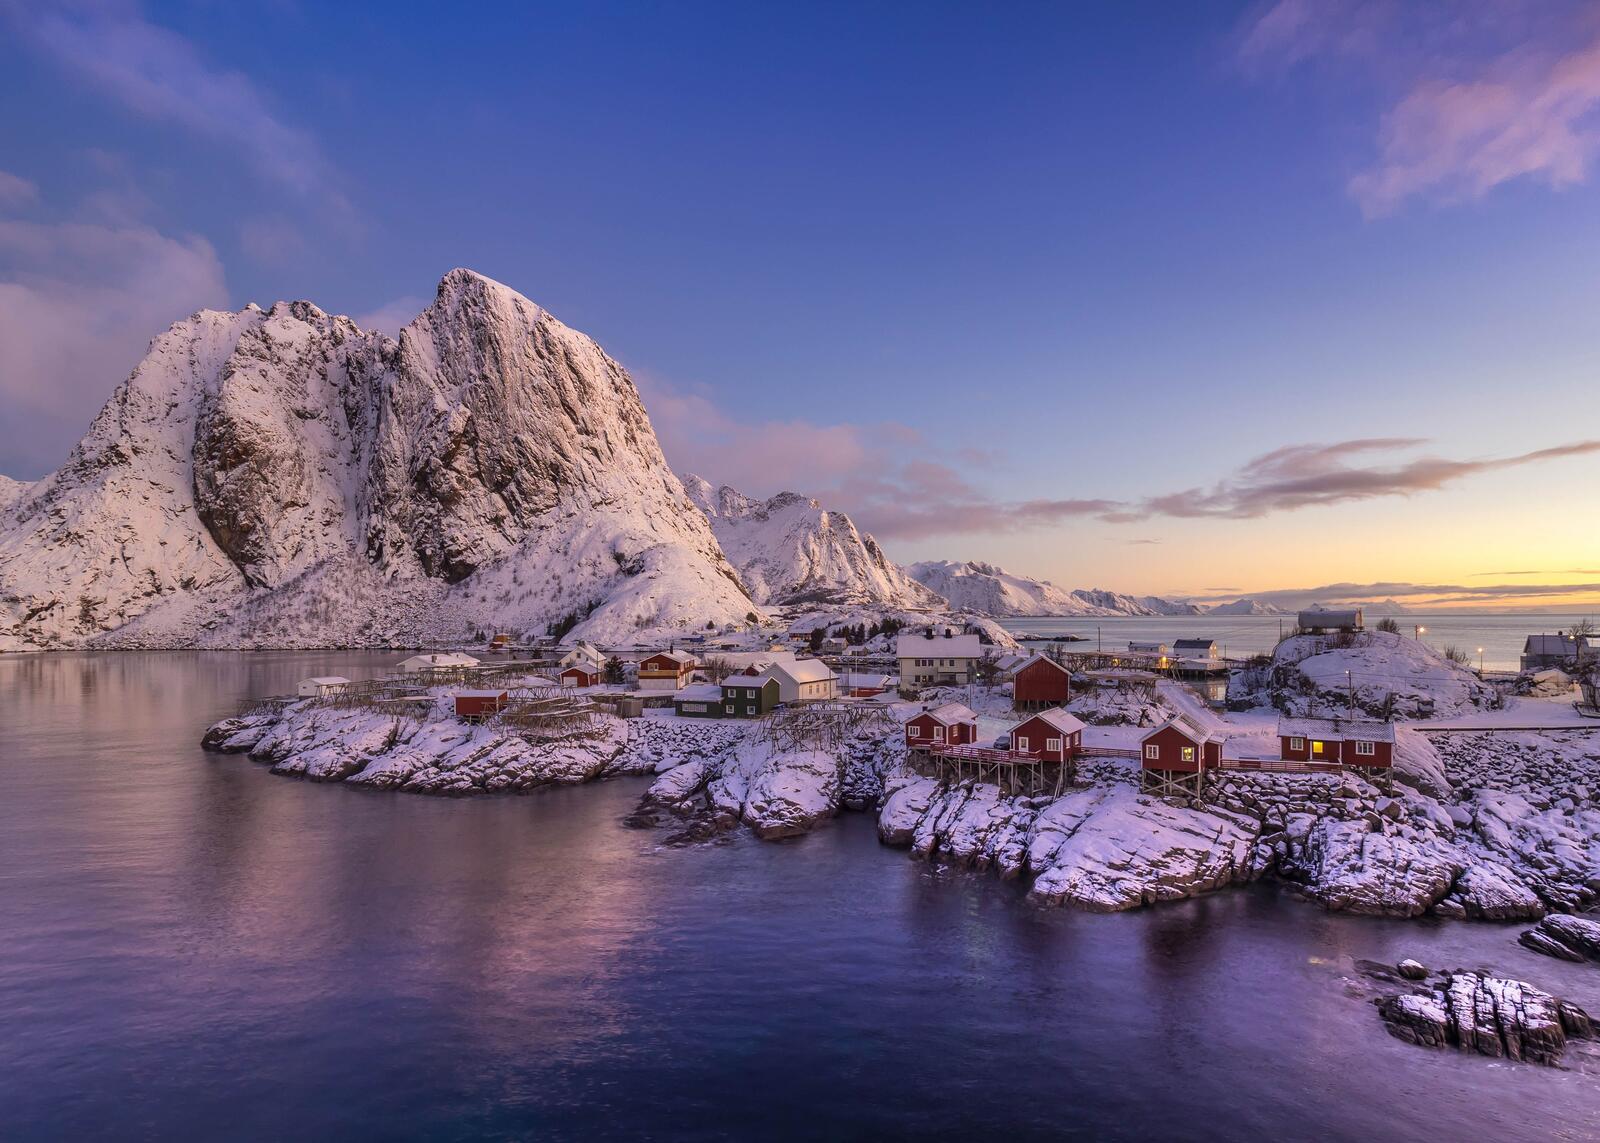 Обои пейзажи зима Лофотенские острова на рабочий стол